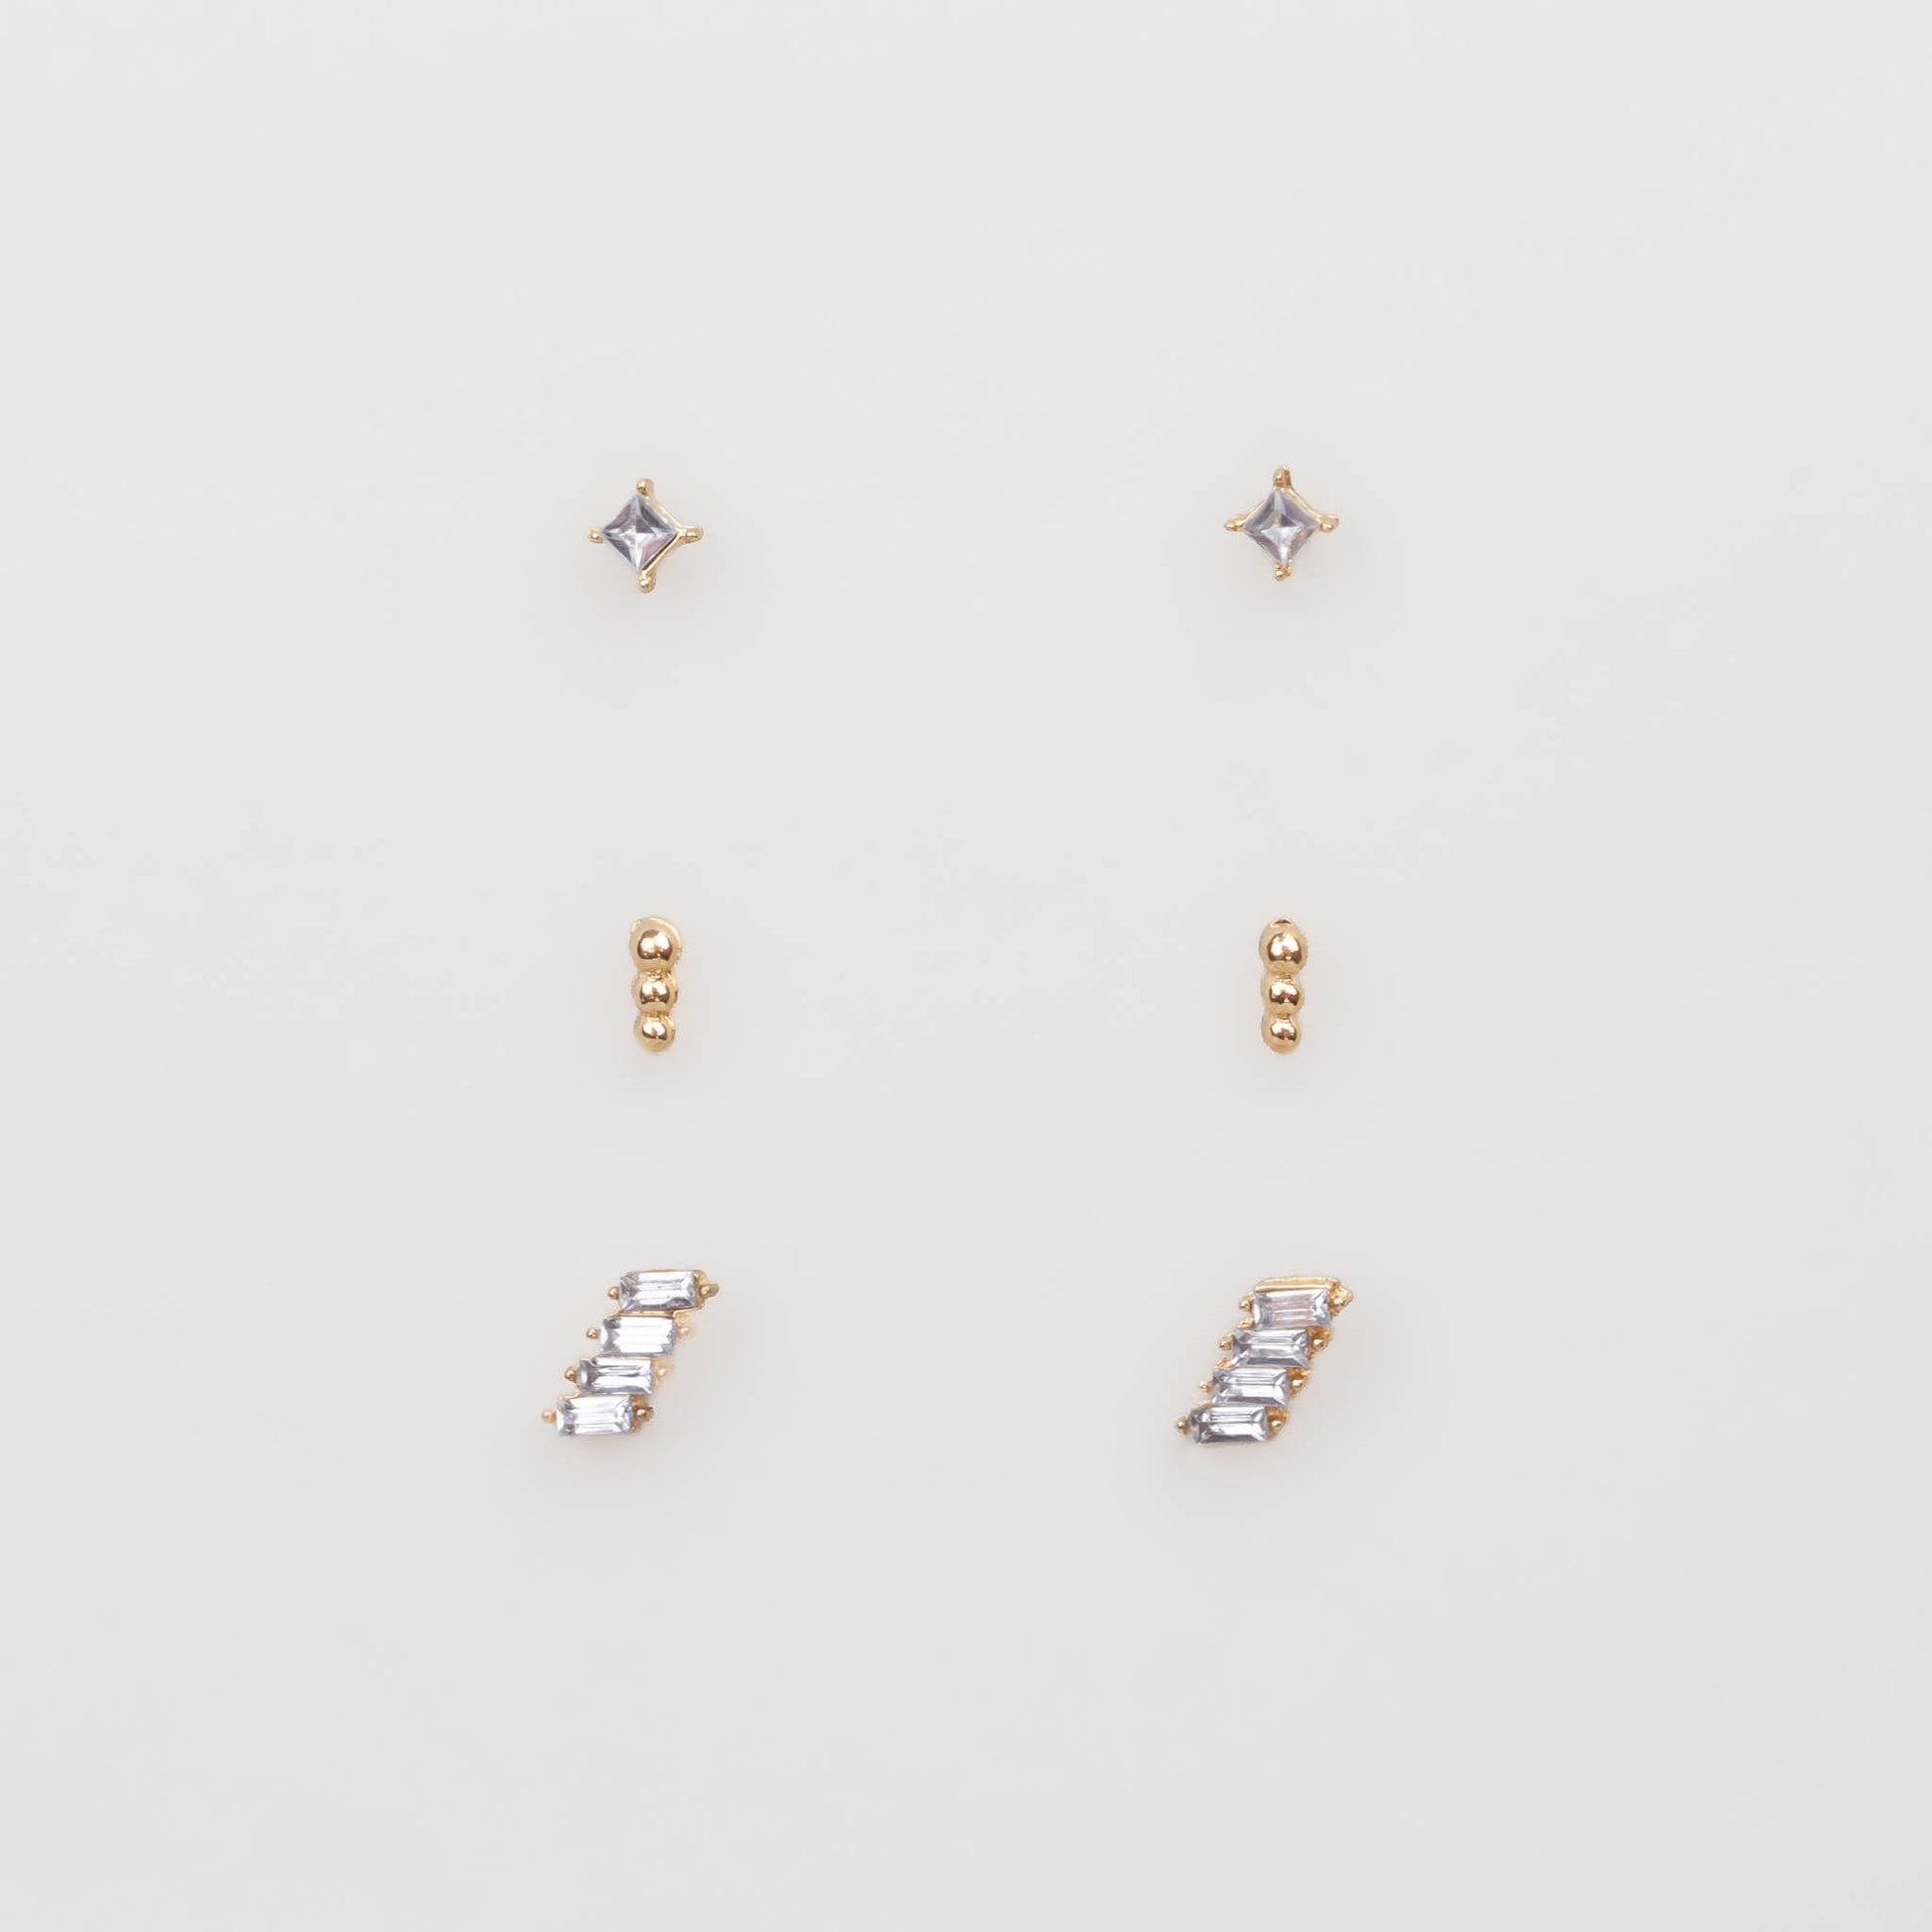 Cercei mici aurii cu pietre și biluțe discrete, set 3 buc